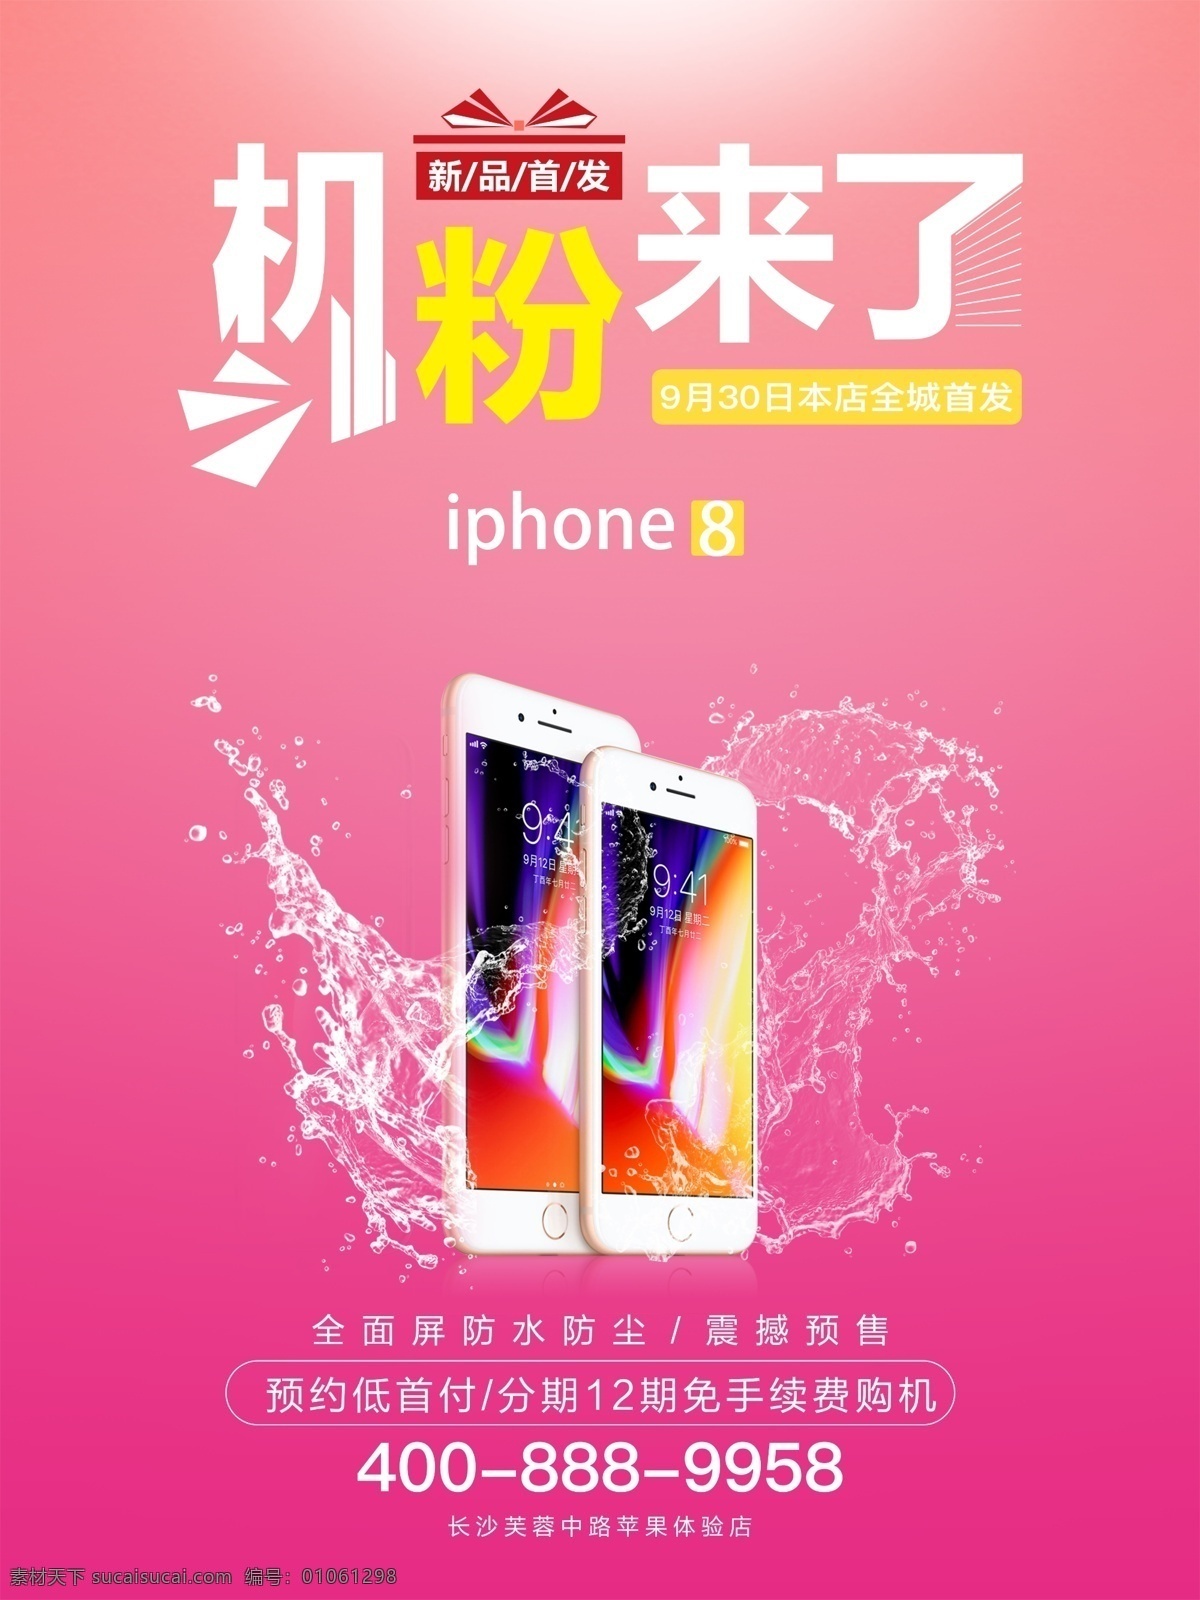 苹果 产品 手机 新品 促销 海报 手机促销海报 新品促销海报 电子产品 粉红色 iphone 体验 店